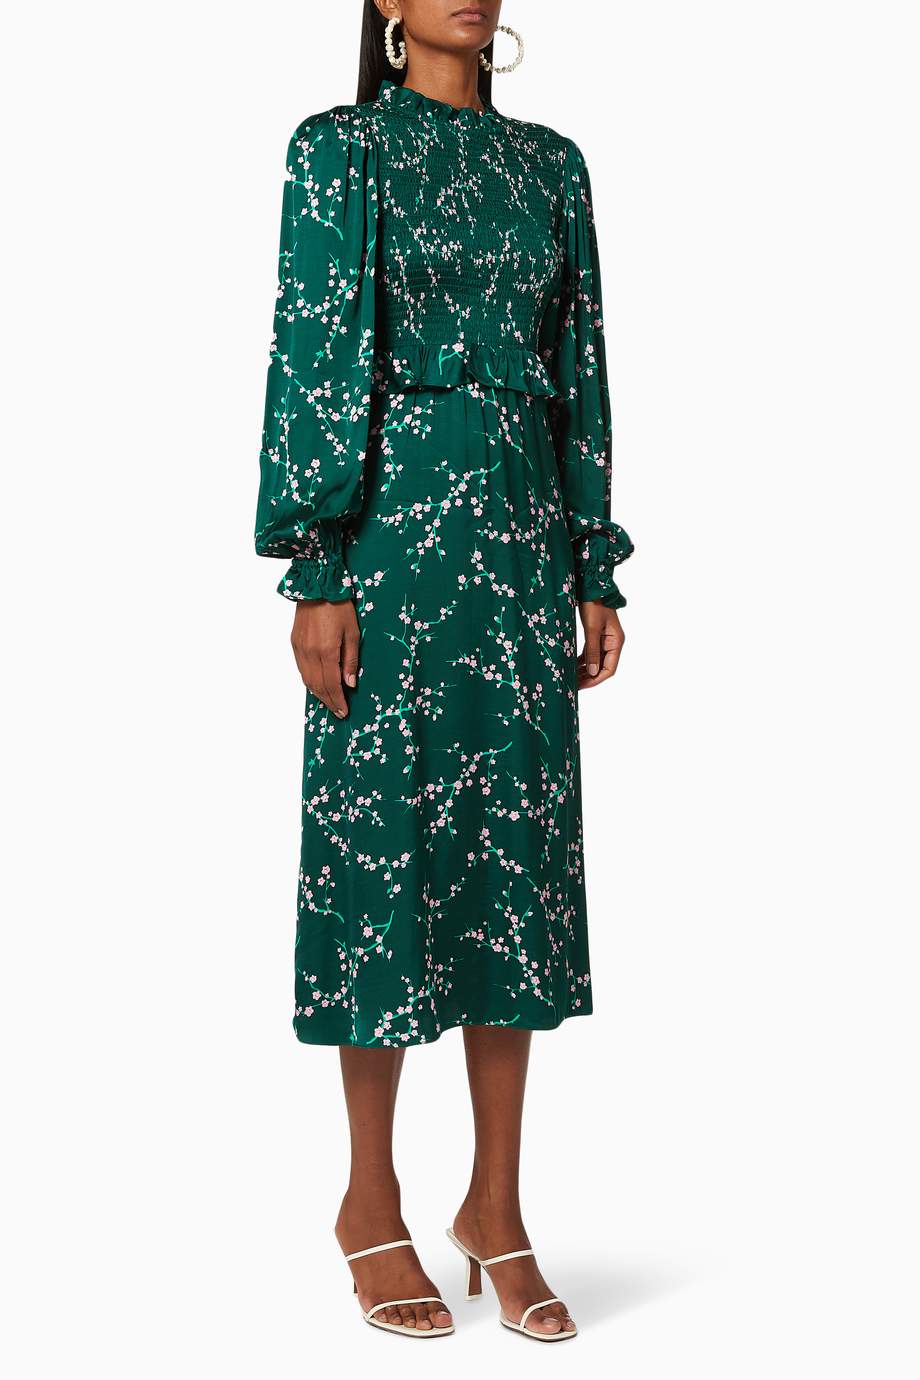 Shop Kitri Green Marcia Cherry Blossom Smocked Dress for Women | Ounass ...